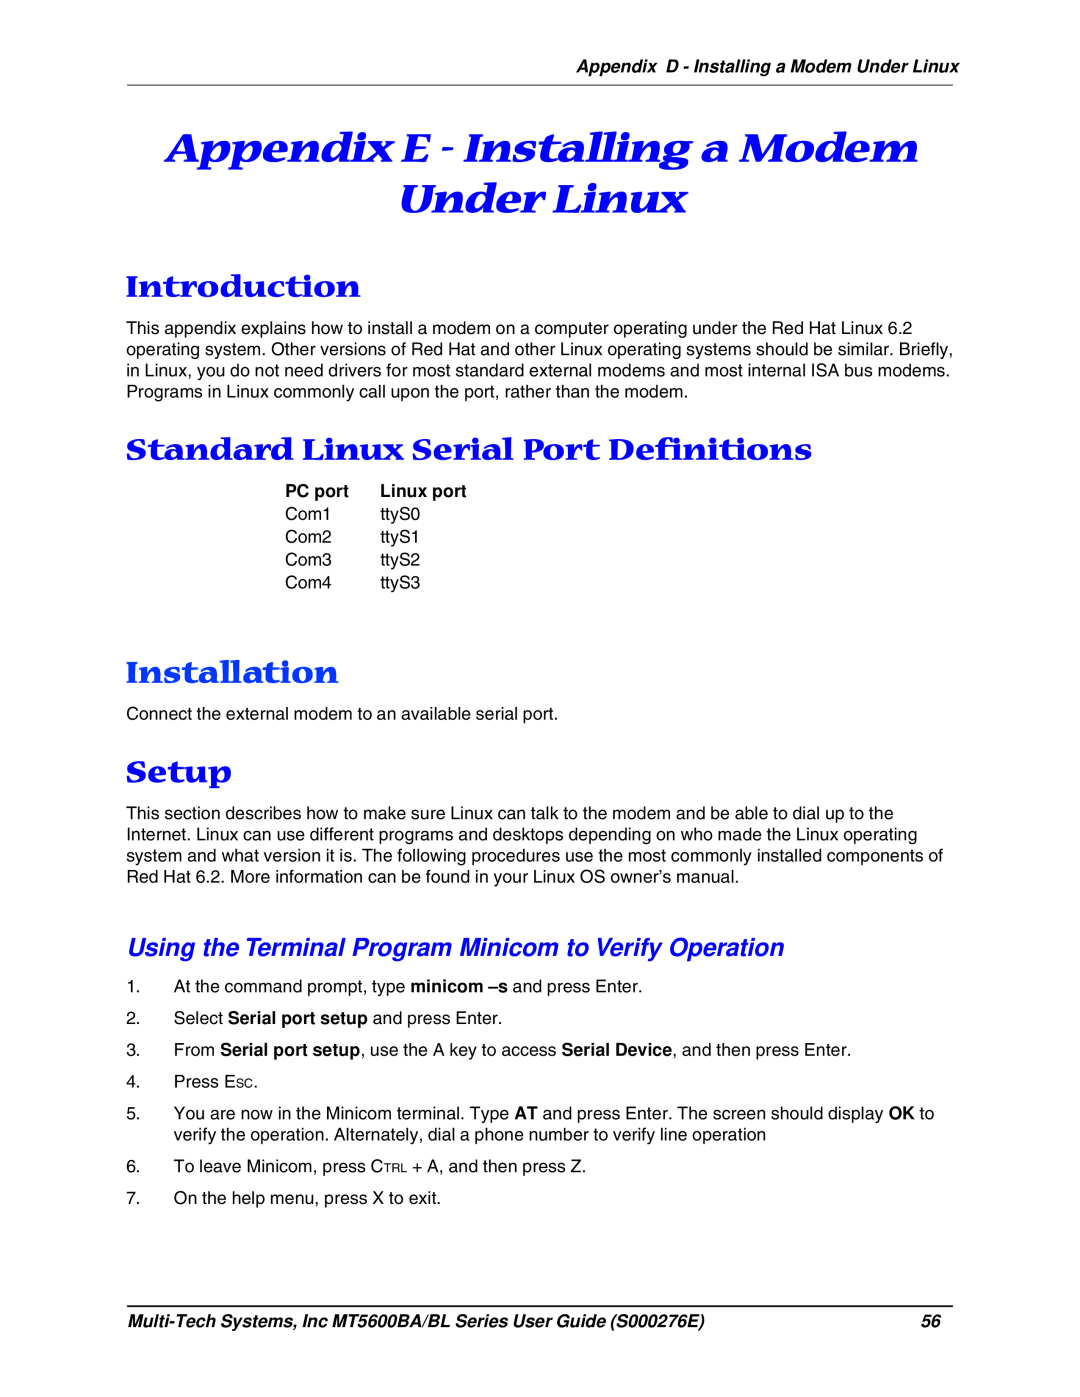 Multitech MT5600BL manual Appendix E - Installing a Modem Under Linux, Standard Linux Serial Port Definitions, Introduction 